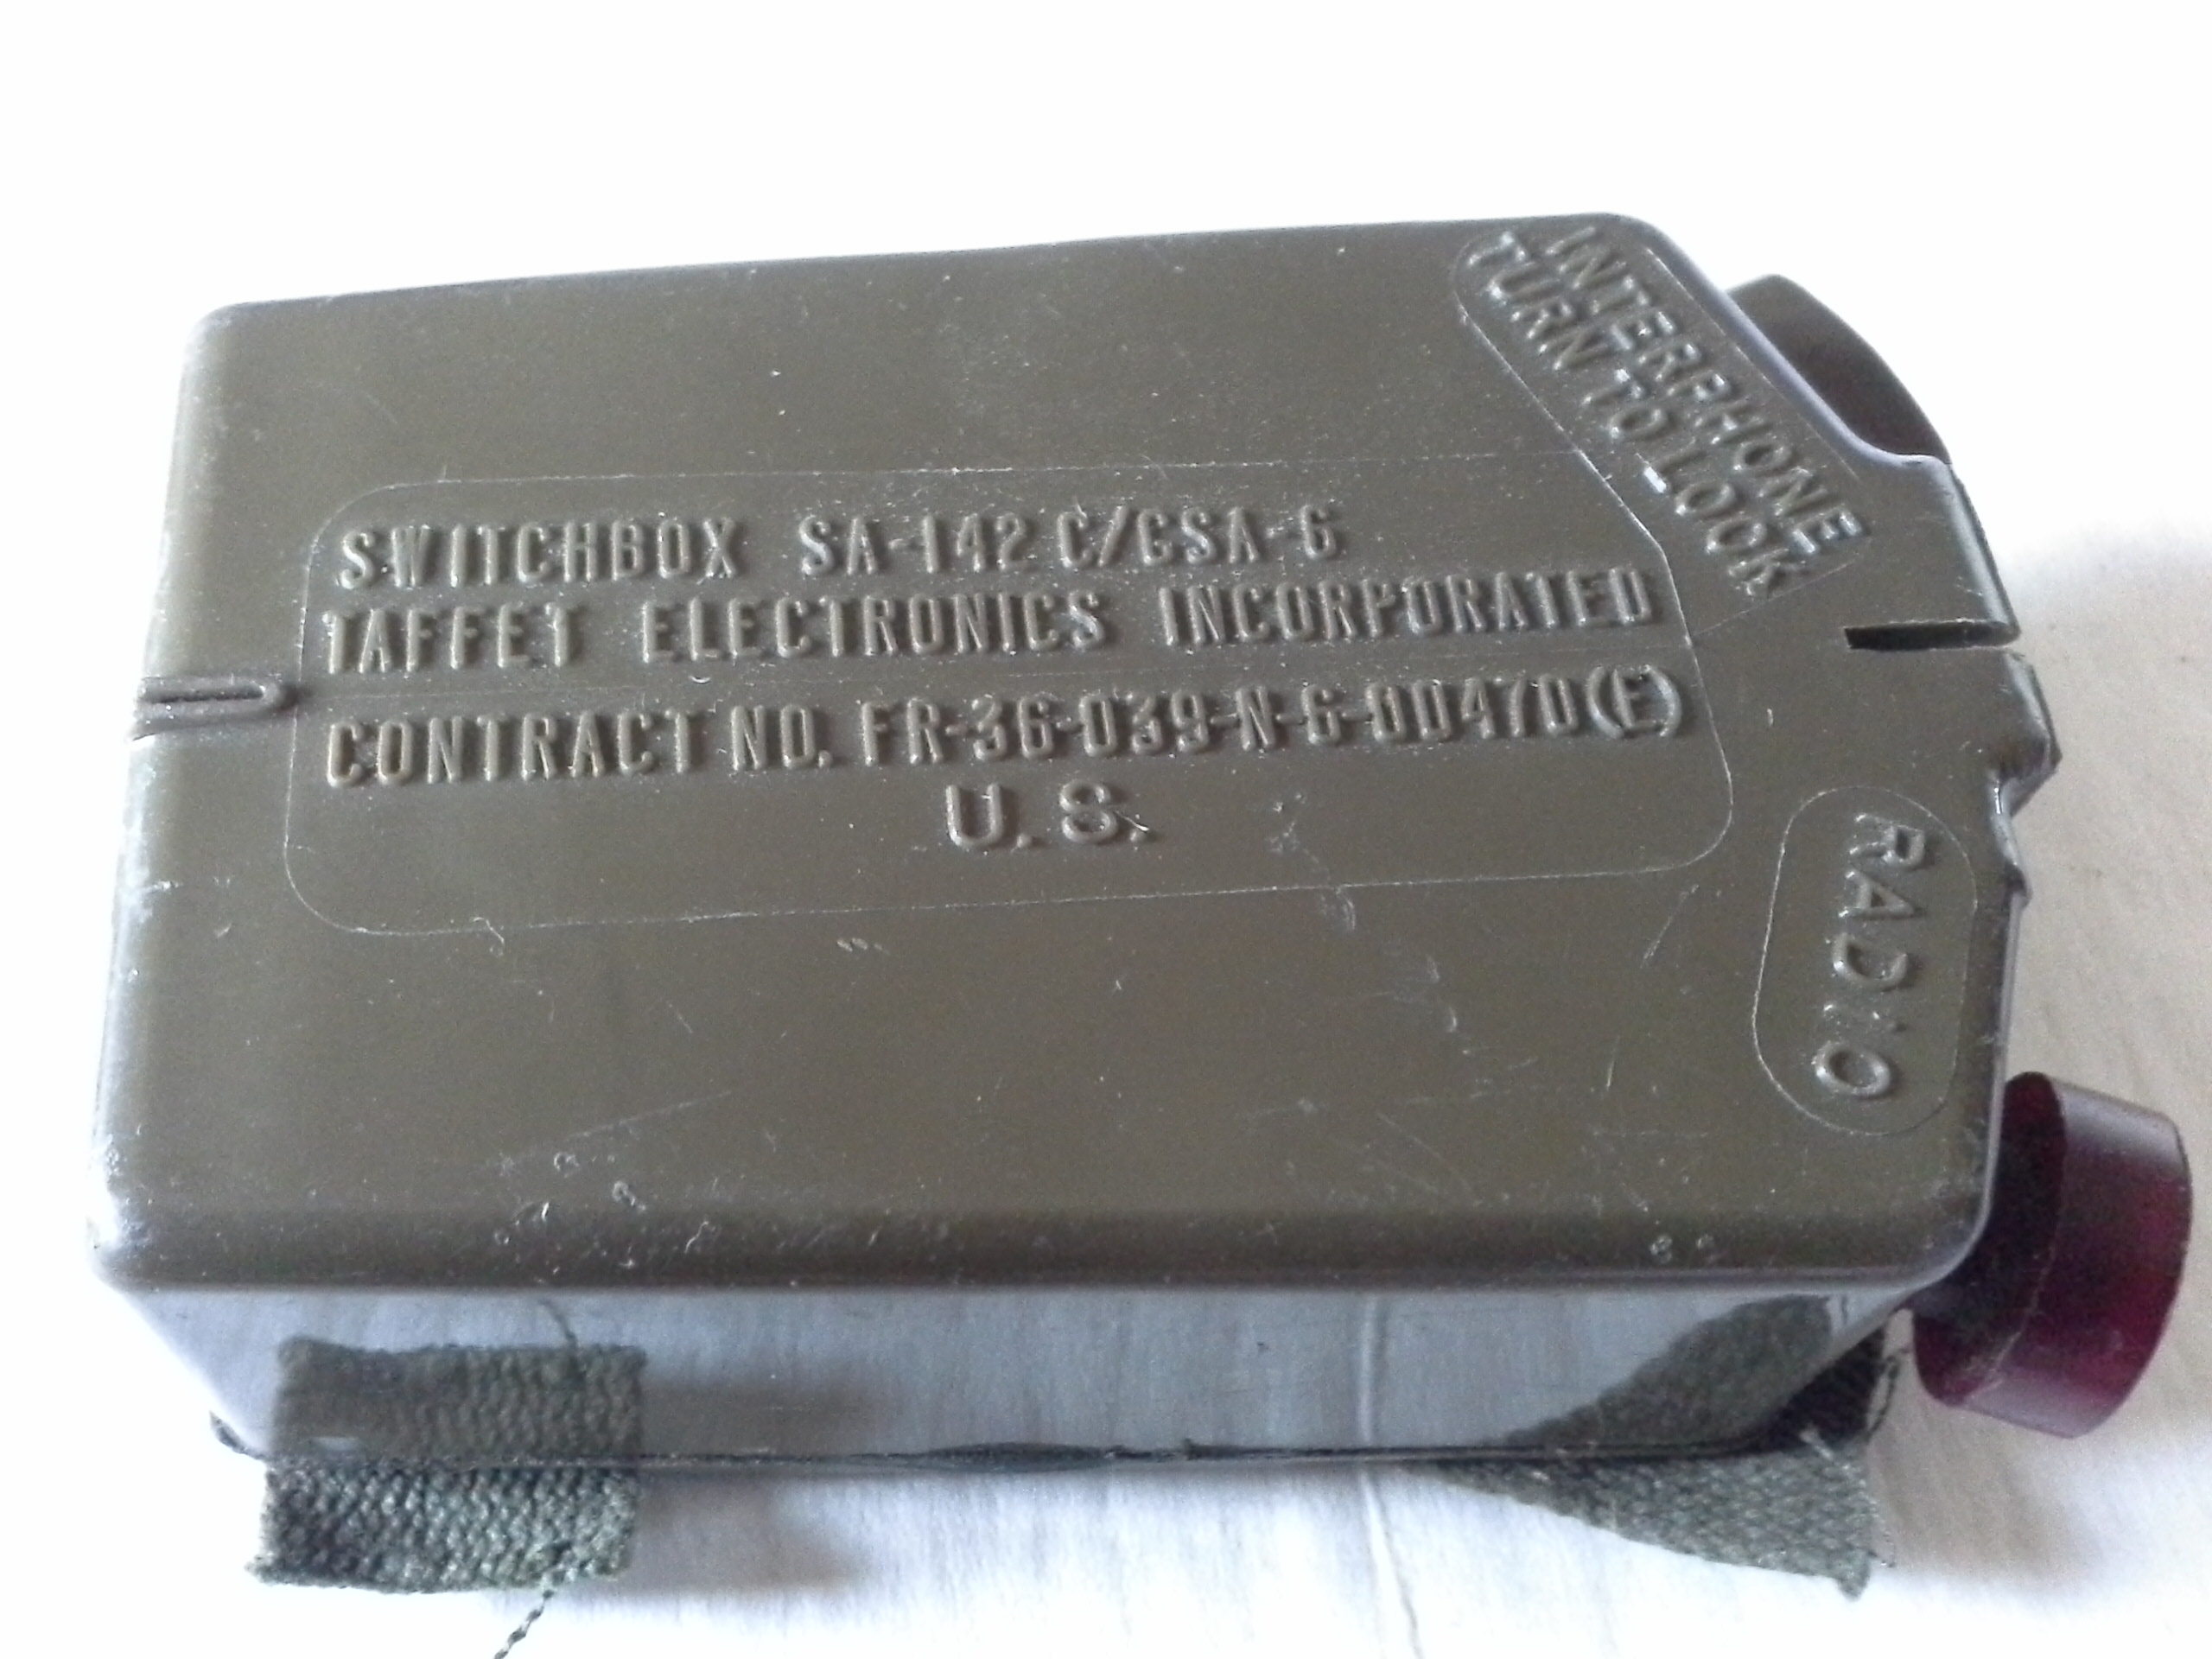 Switchbox SA-142 C/GSA-6 Brustschaltkasten für Funkgerät